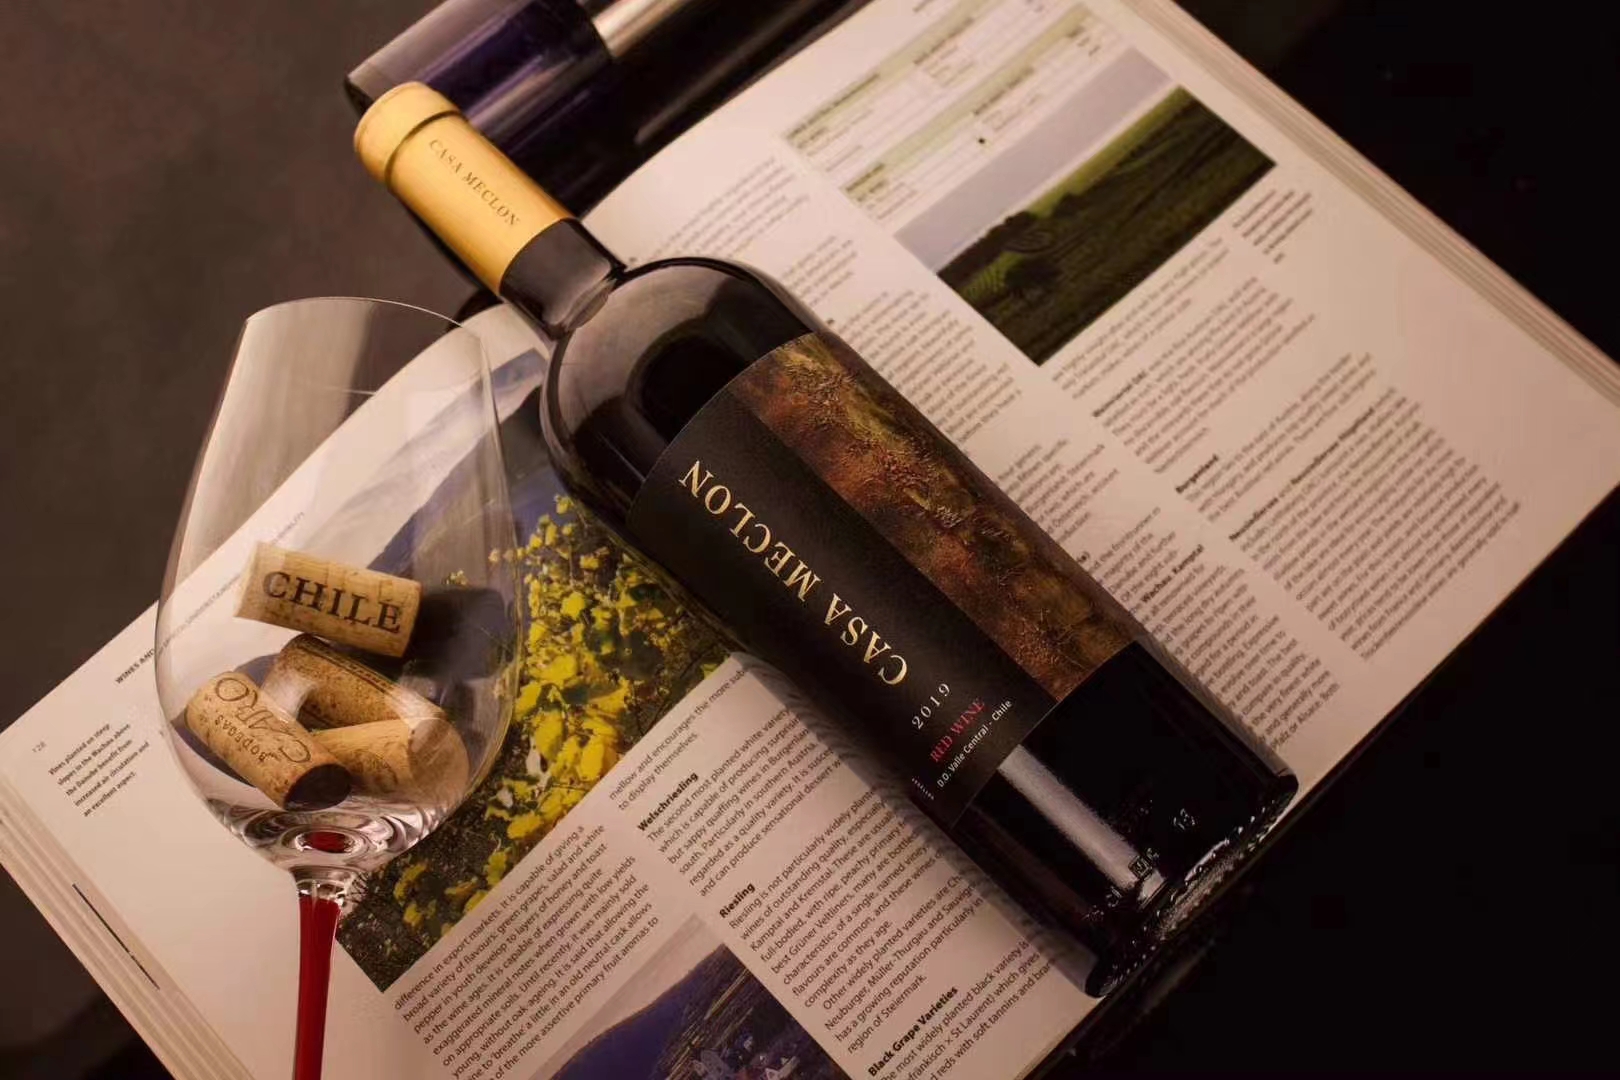 东莞市智利原瓶进口米卡龙葡萄酒进口商厂家智利原瓶进口米卡龙葡萄酒进口商批发代理一件代发